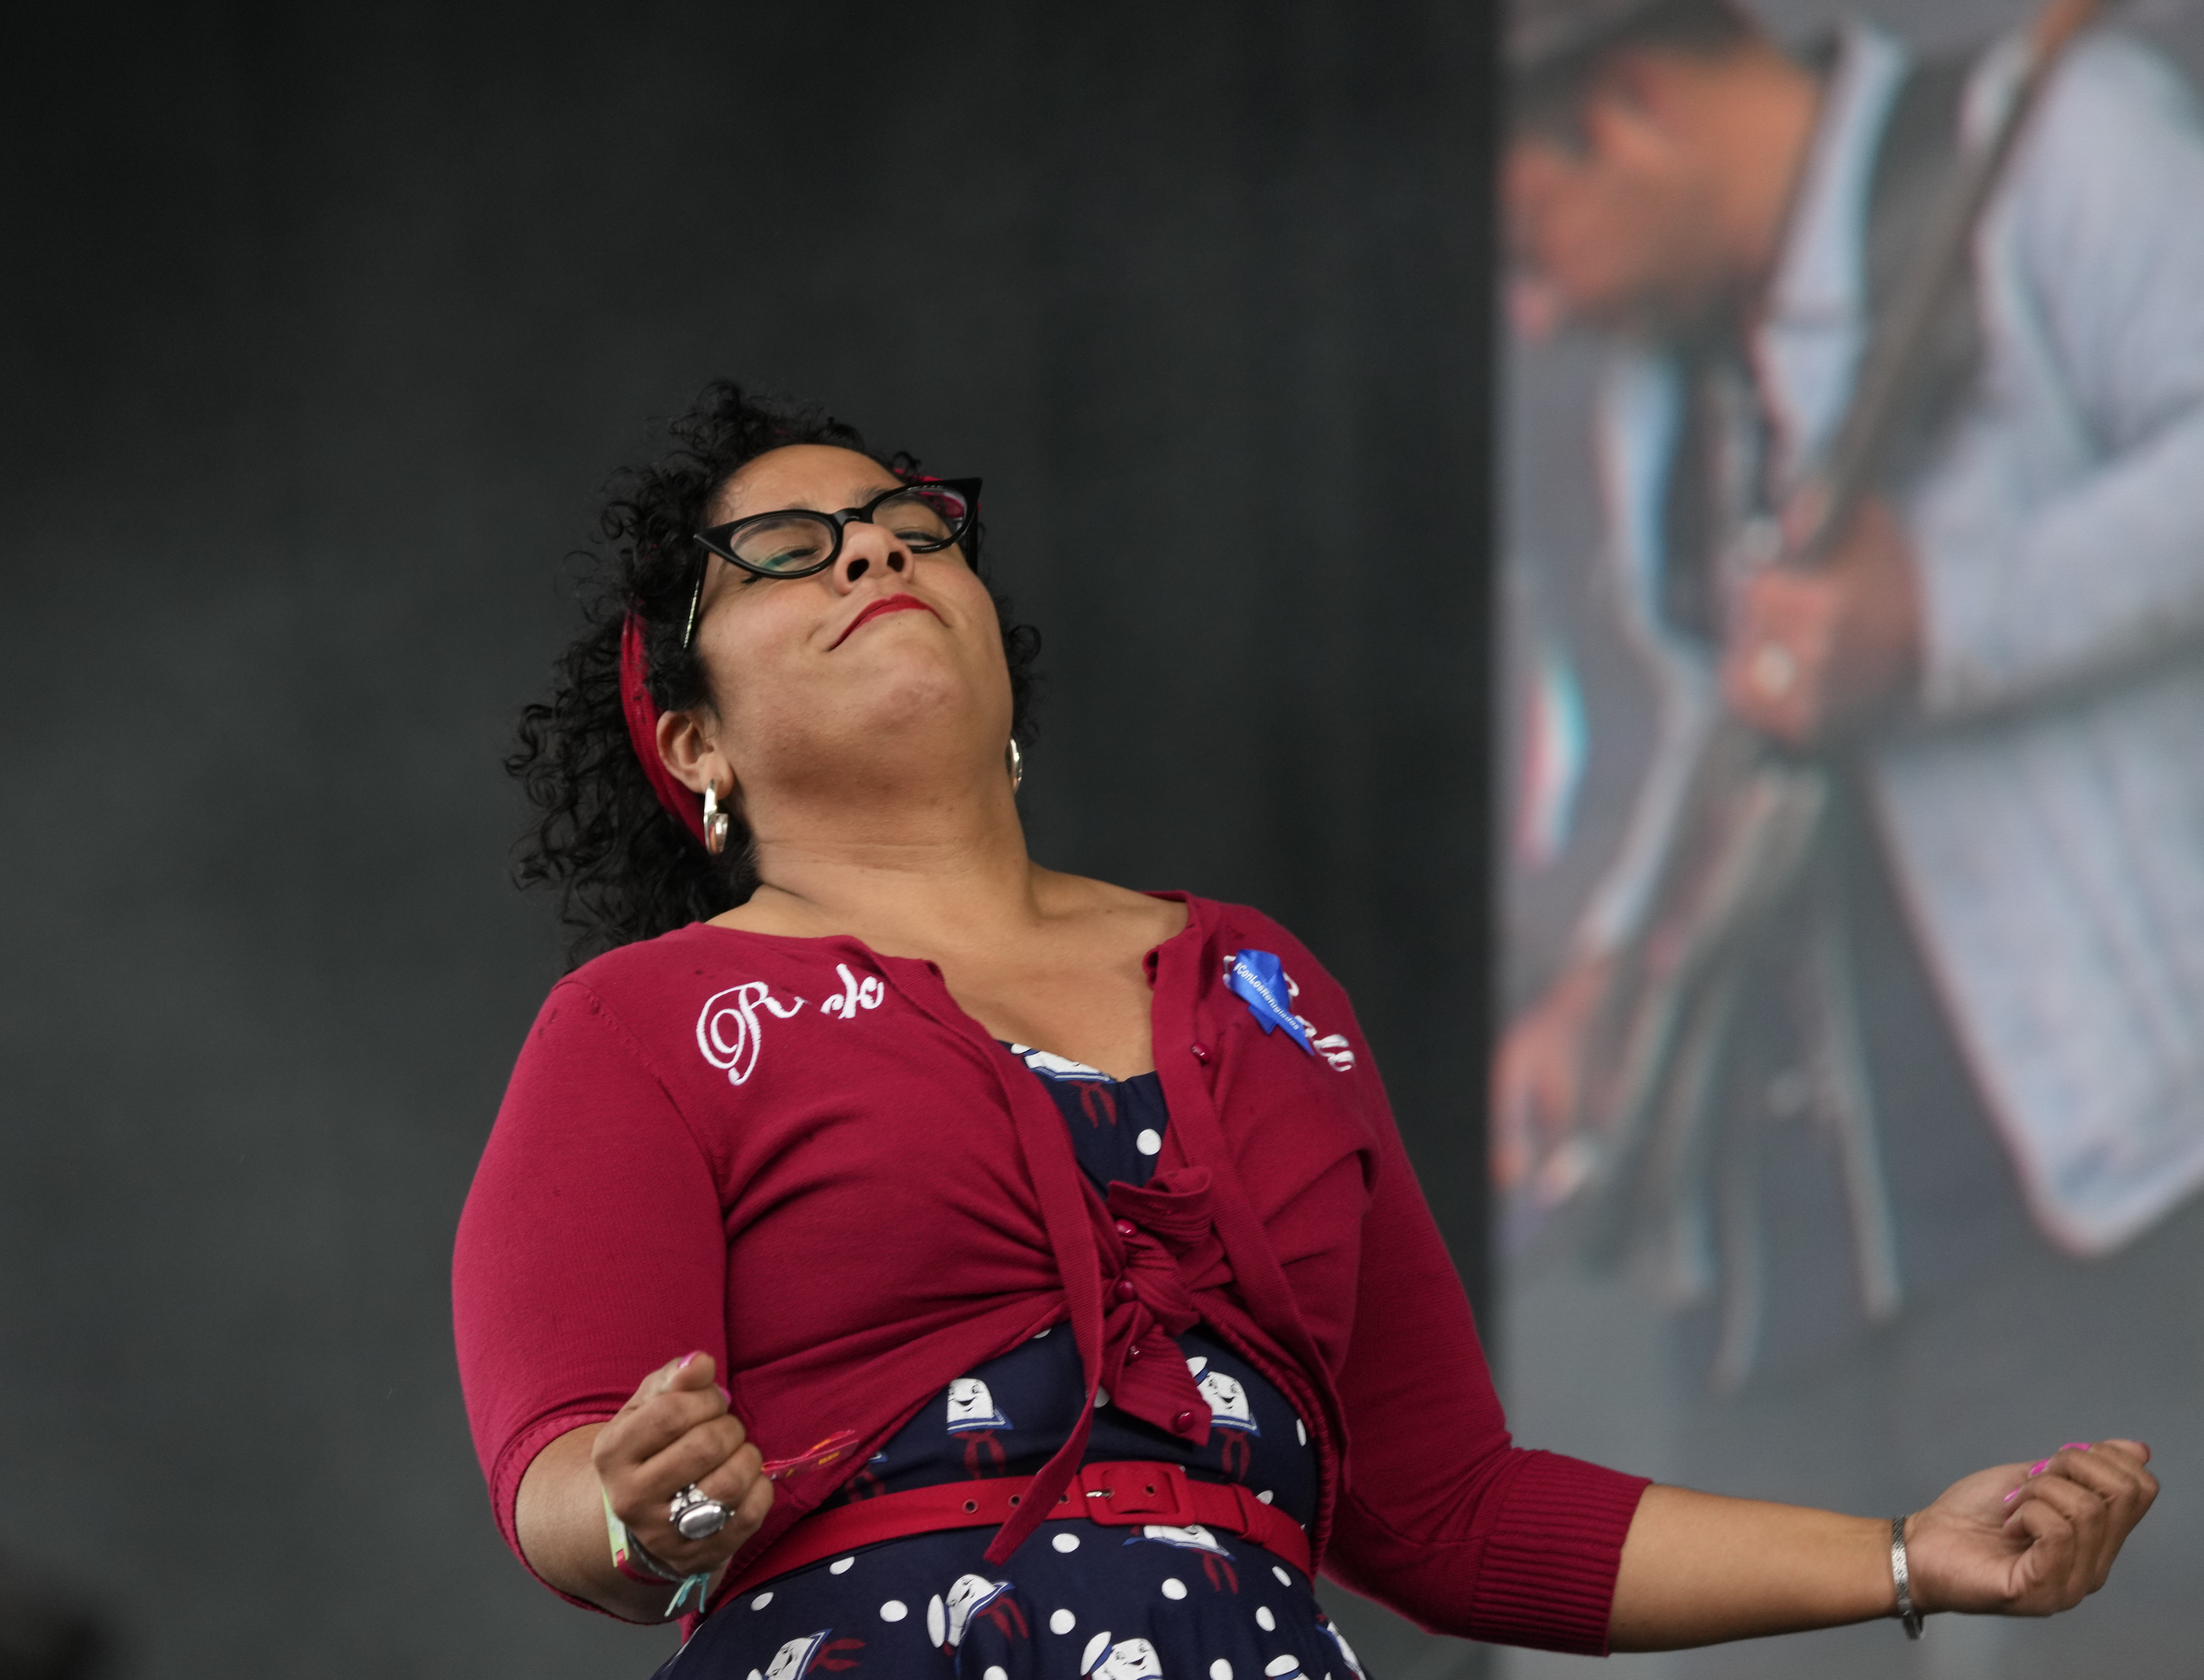 Marisol "La Marisoul" Hernández vocalista de la banda mexico-estadounidense La Santa Cecilia durante su presentación en el festival Vive Latino en la Ciudad de México el sábado 18 de marzo de 2023. (Foto AP/Fernando Llano)